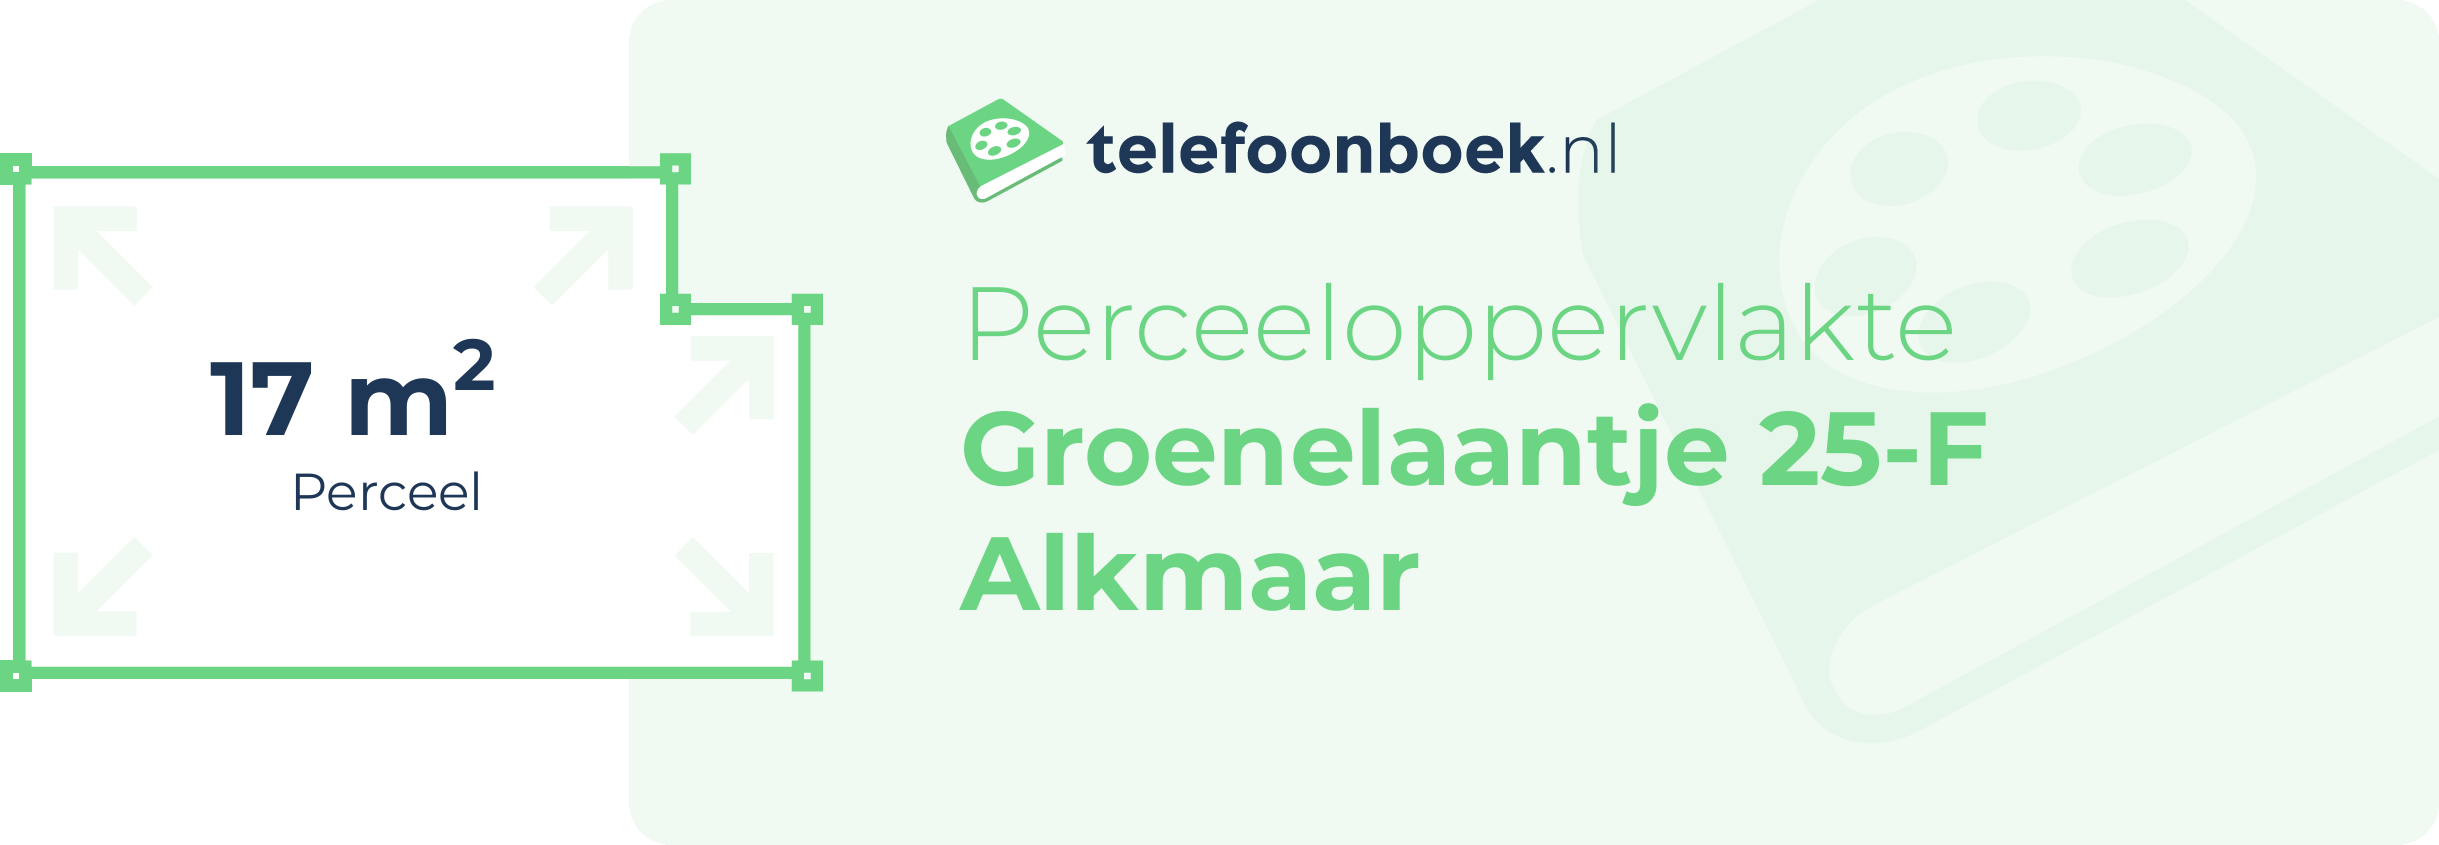 Perceeloppervlakte Groenelaantje 25-F Alkmaar